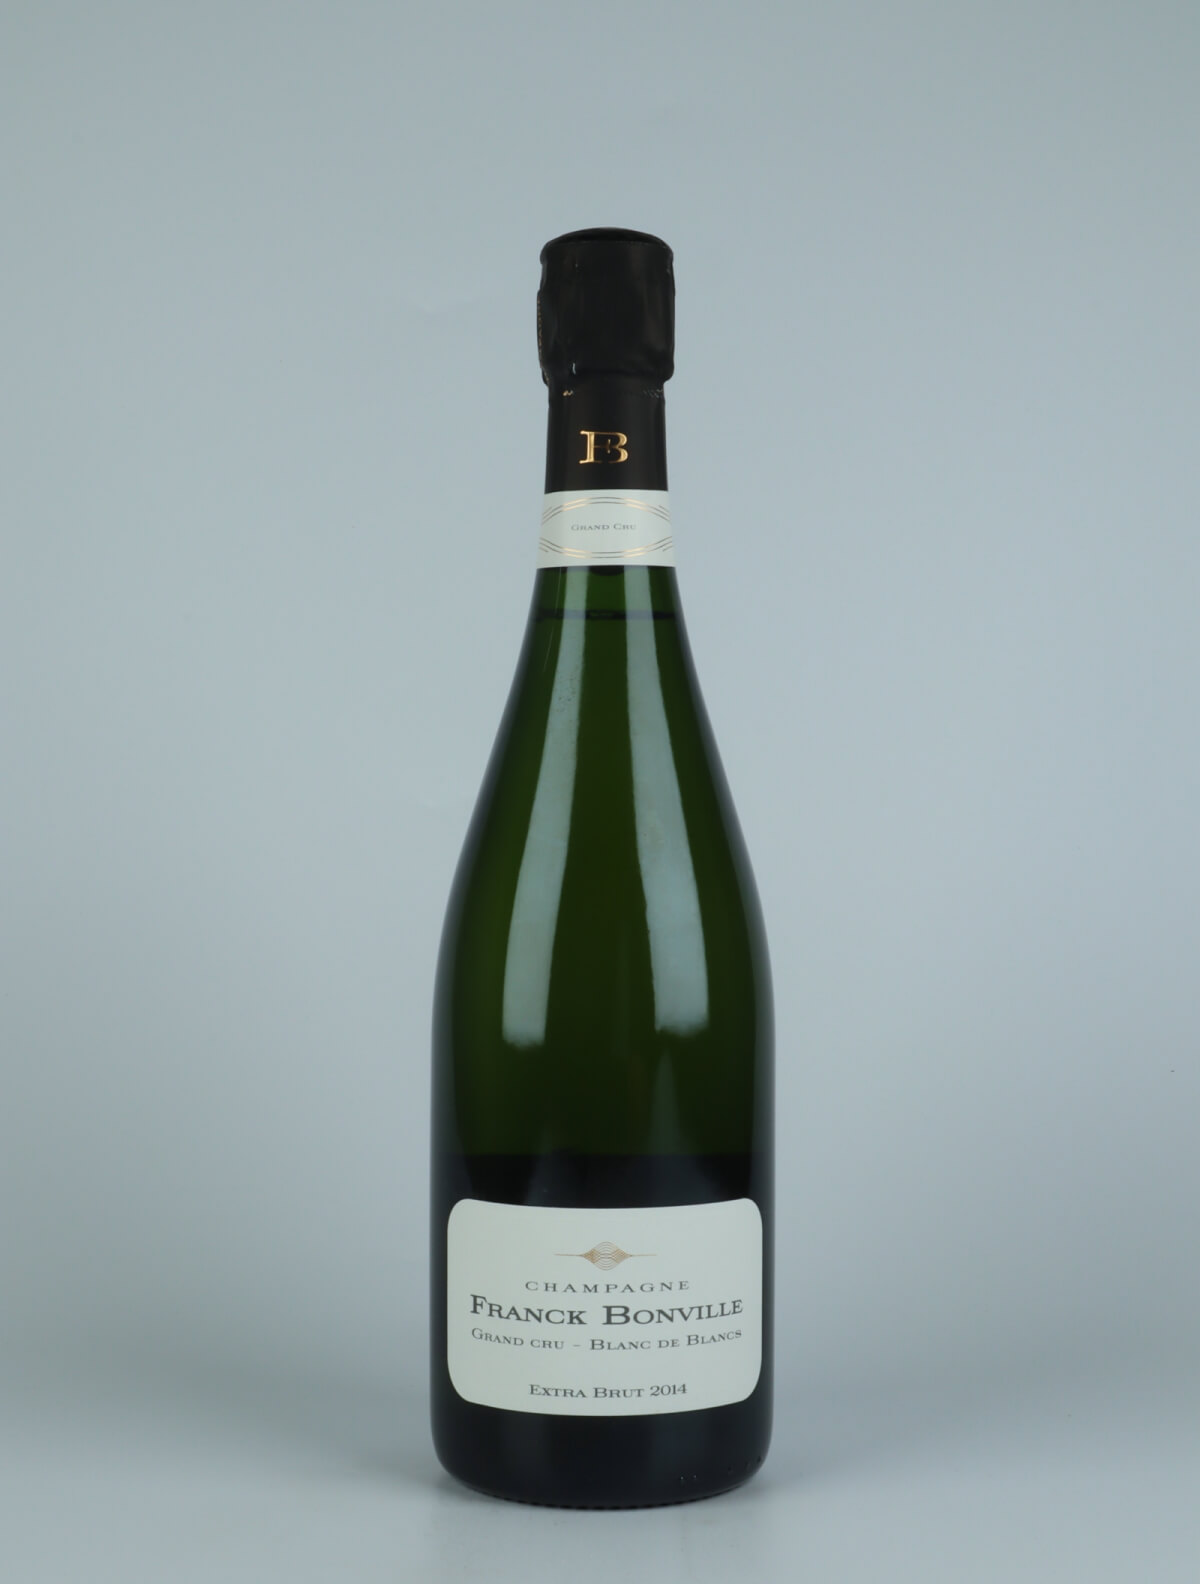 A bottle 2014 Extra Brut - Grand Cru - Blanc de Blancs Sparkling from Franck Bonville, Champagne in France